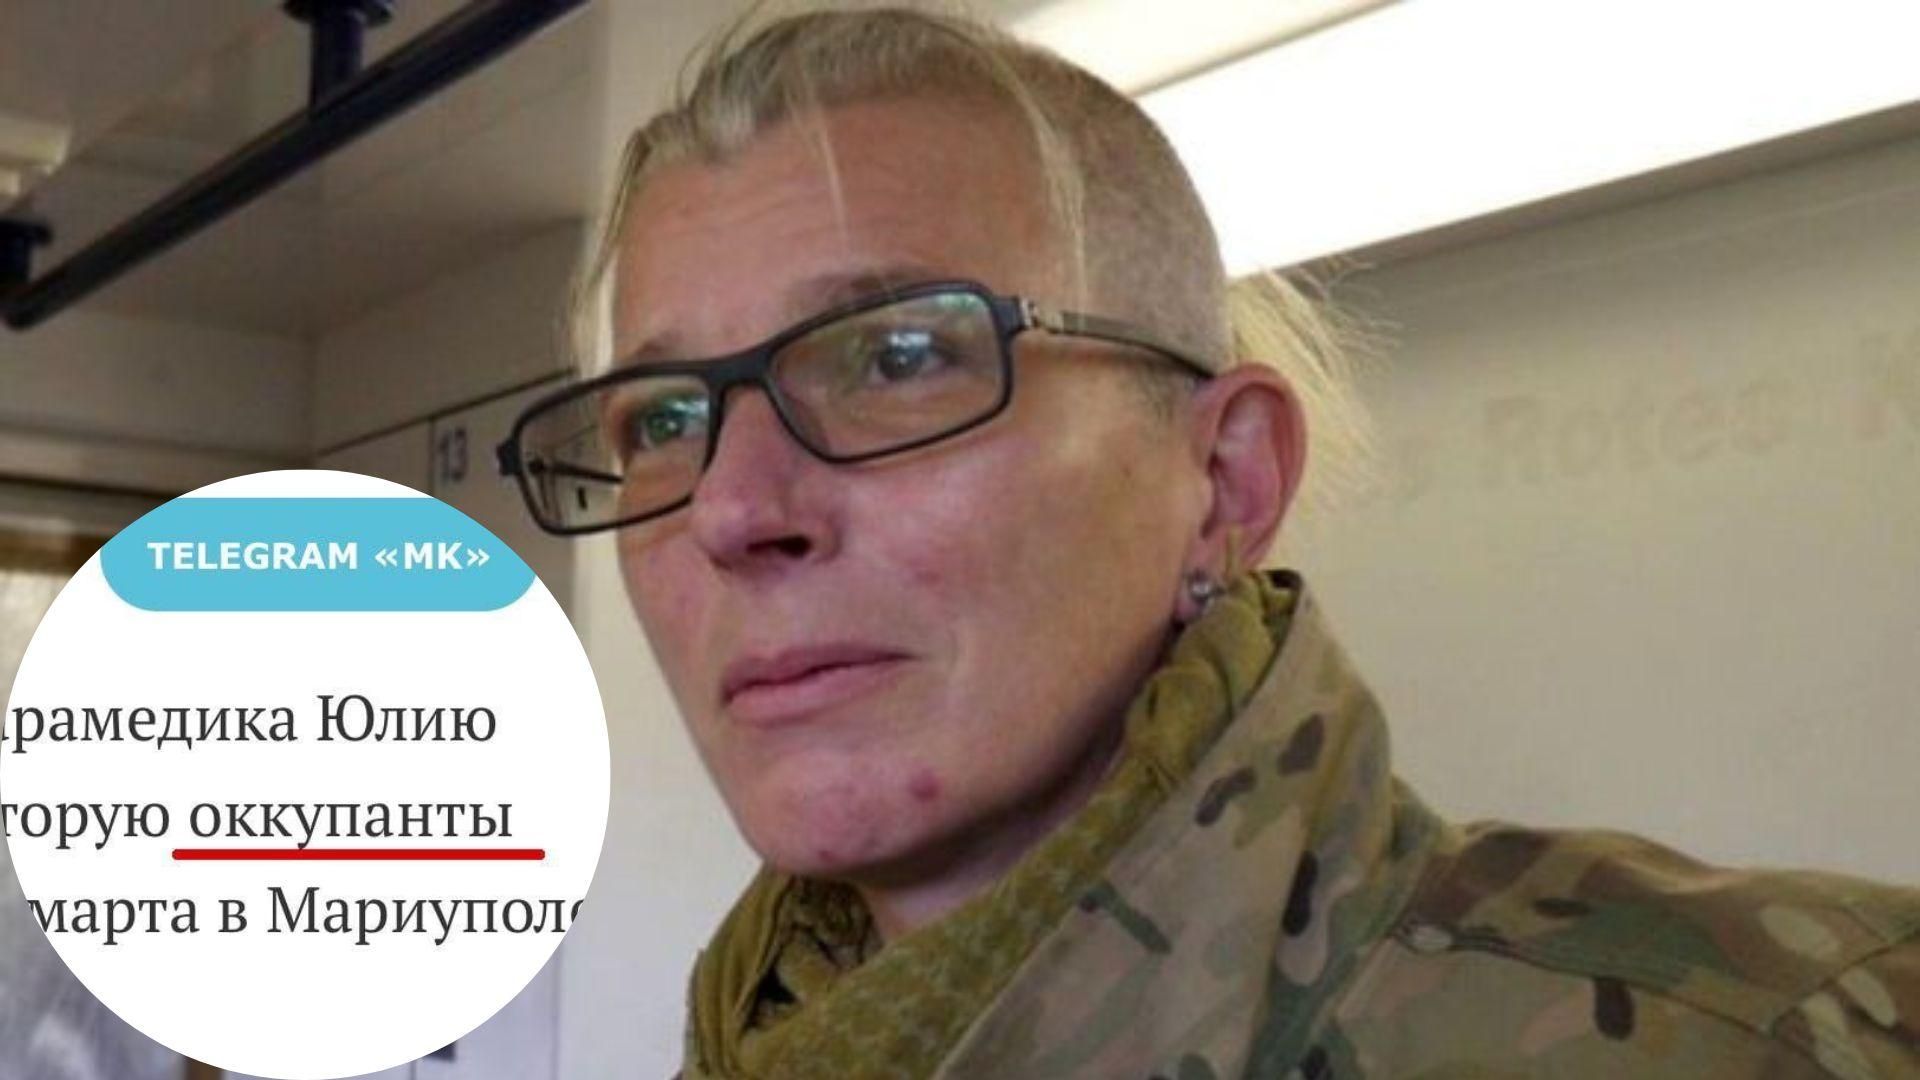 В российском СМИ редактор назвала россиян "оккупантами", когда писала об освобождении Тайры